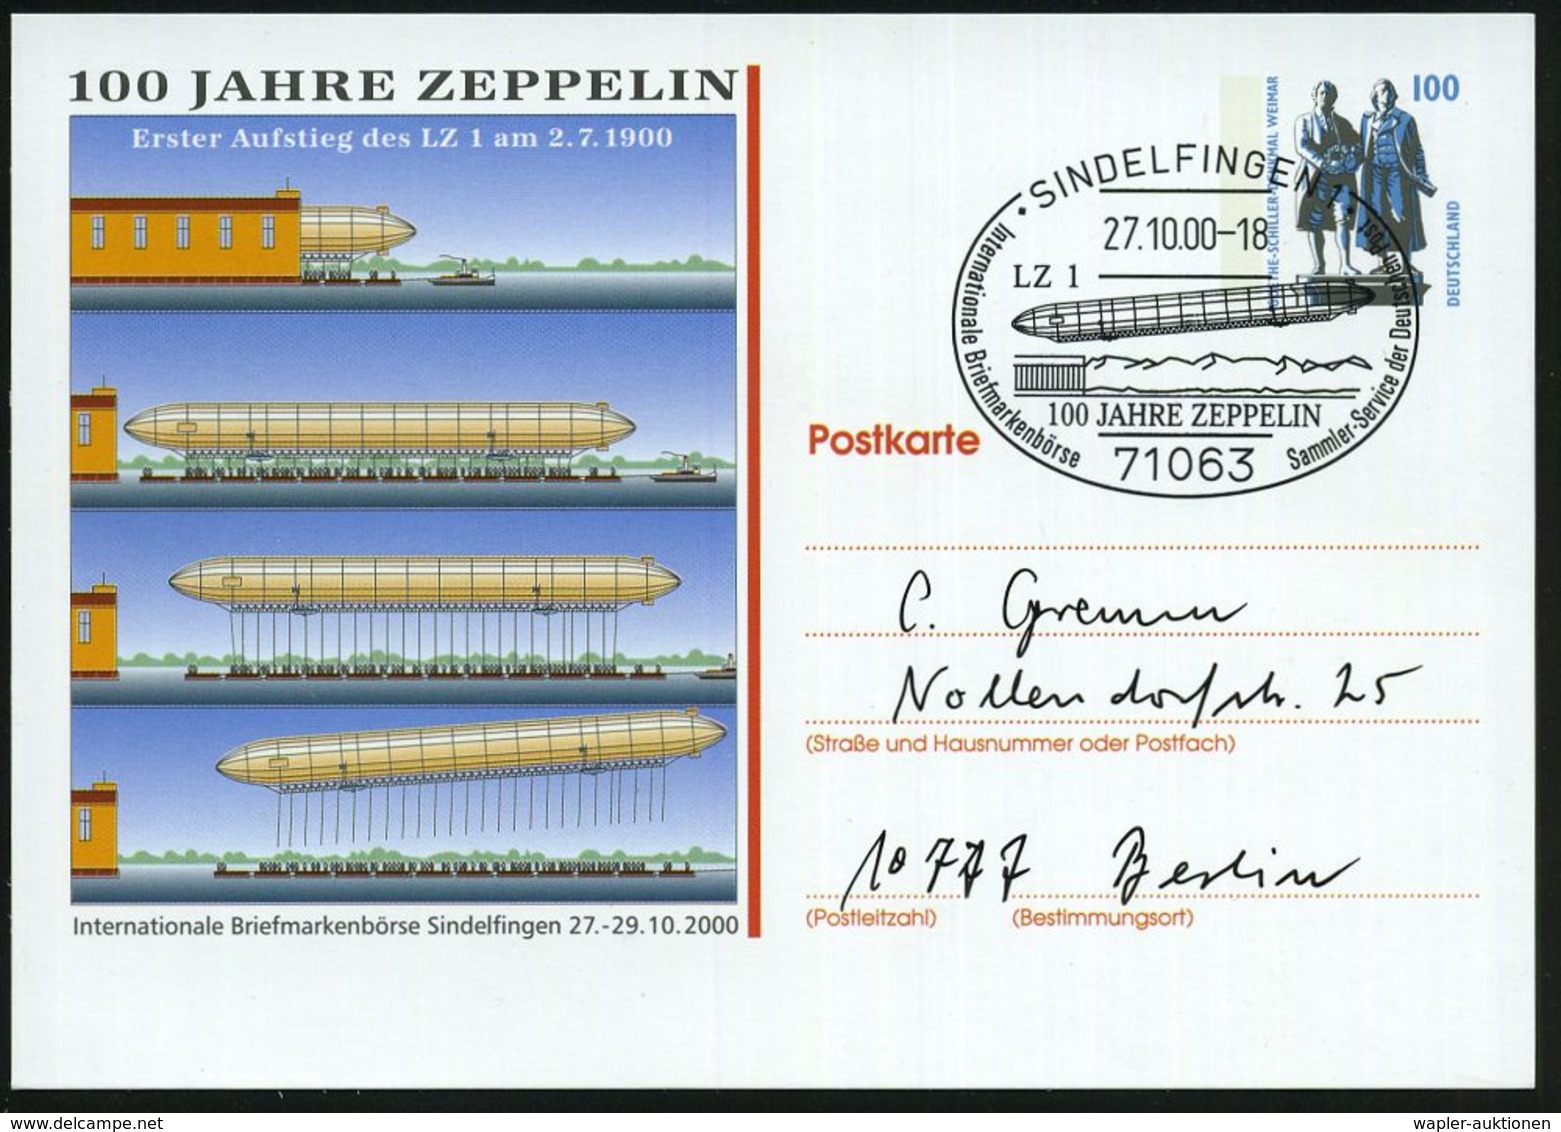 ZEPPELIN-MEMORABILA / ERINNERUNGSBELEGE : 71063 SINDELFINGEN 1/ 100 JAHRE ZEPPELIN.. 2000 (27.10.) SSt = Zeppelin LZ 1 A - Zeppeline